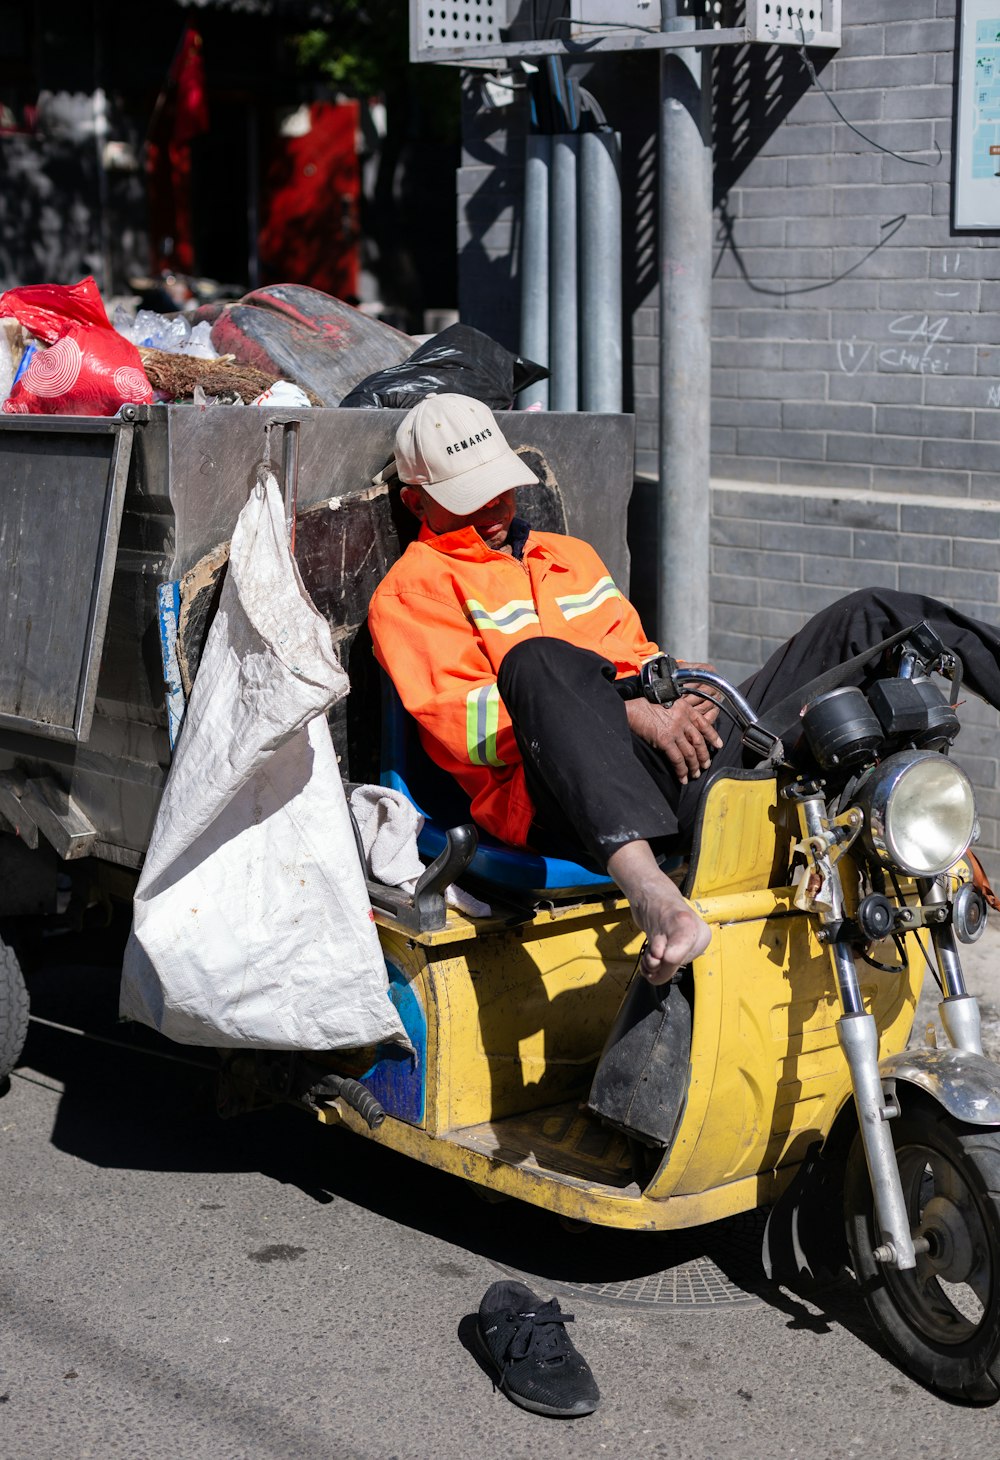 Mann in orange-weißer Jacke sitzt tagsüber auf gelbem Motorrad